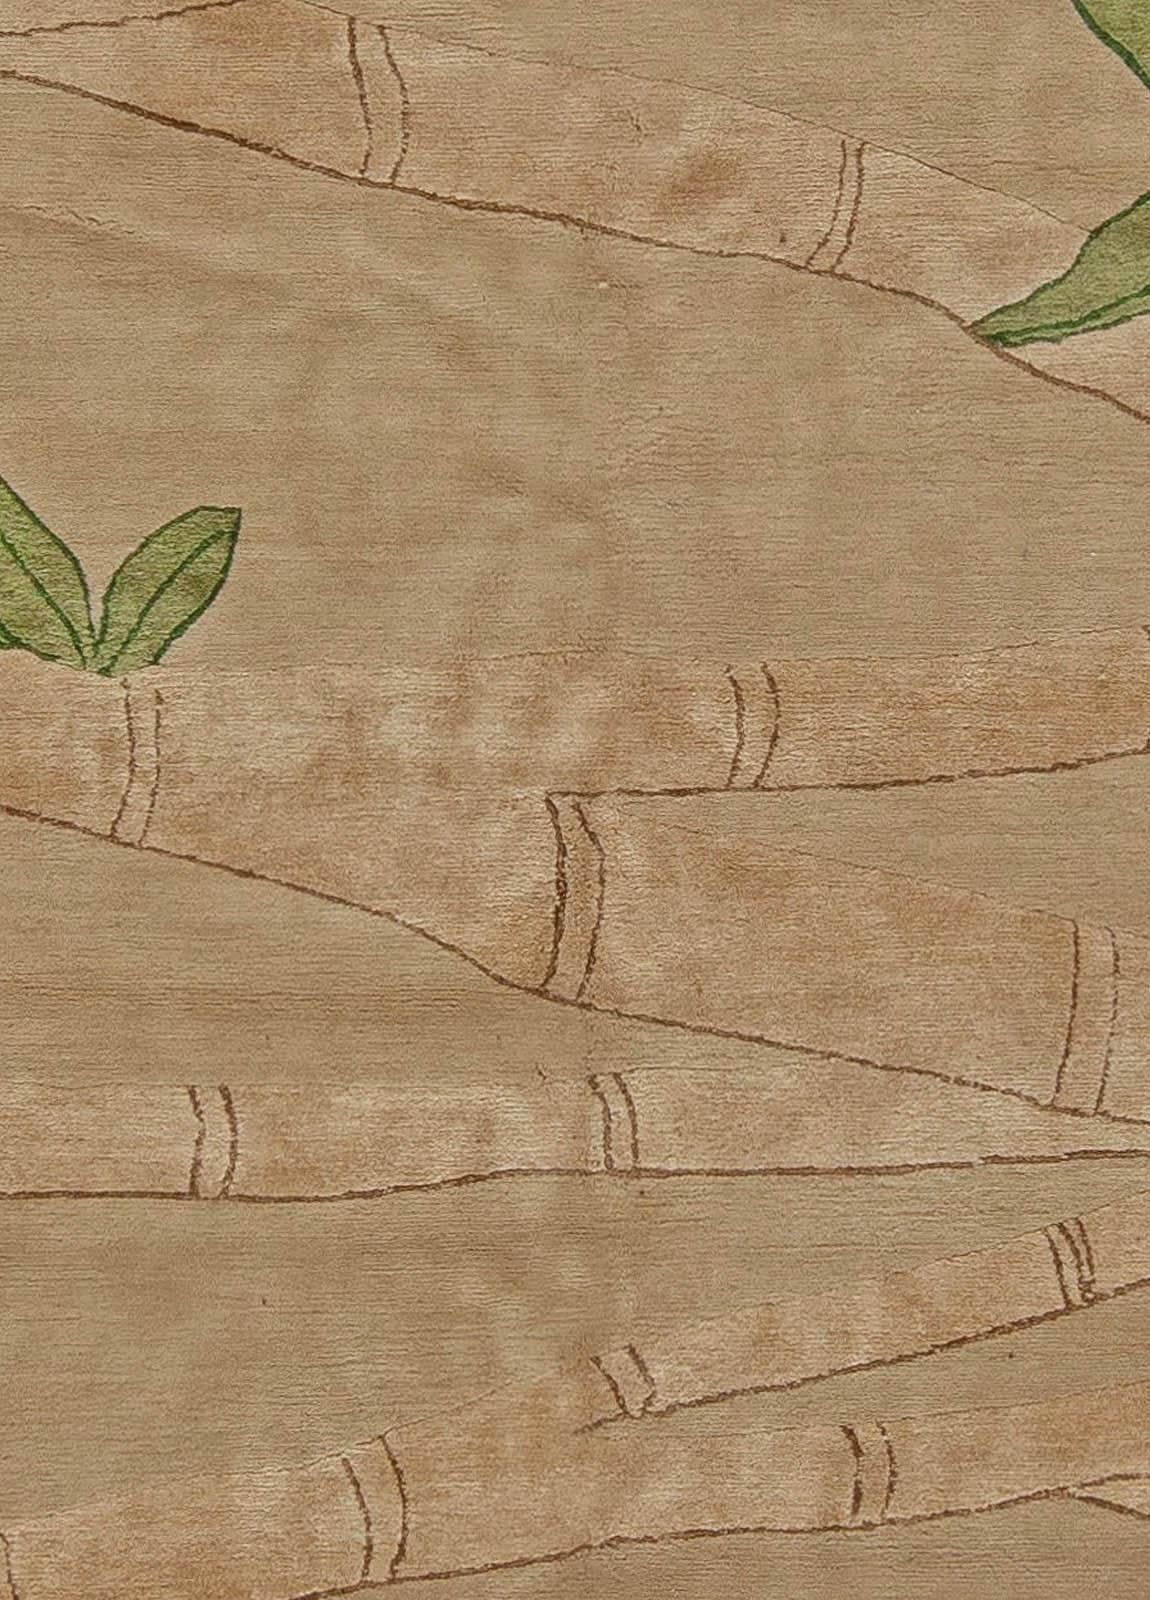 Tapis contemporain en bambou fait main en laine et soie par Doris Leslie Blau.
Taille : 9'0